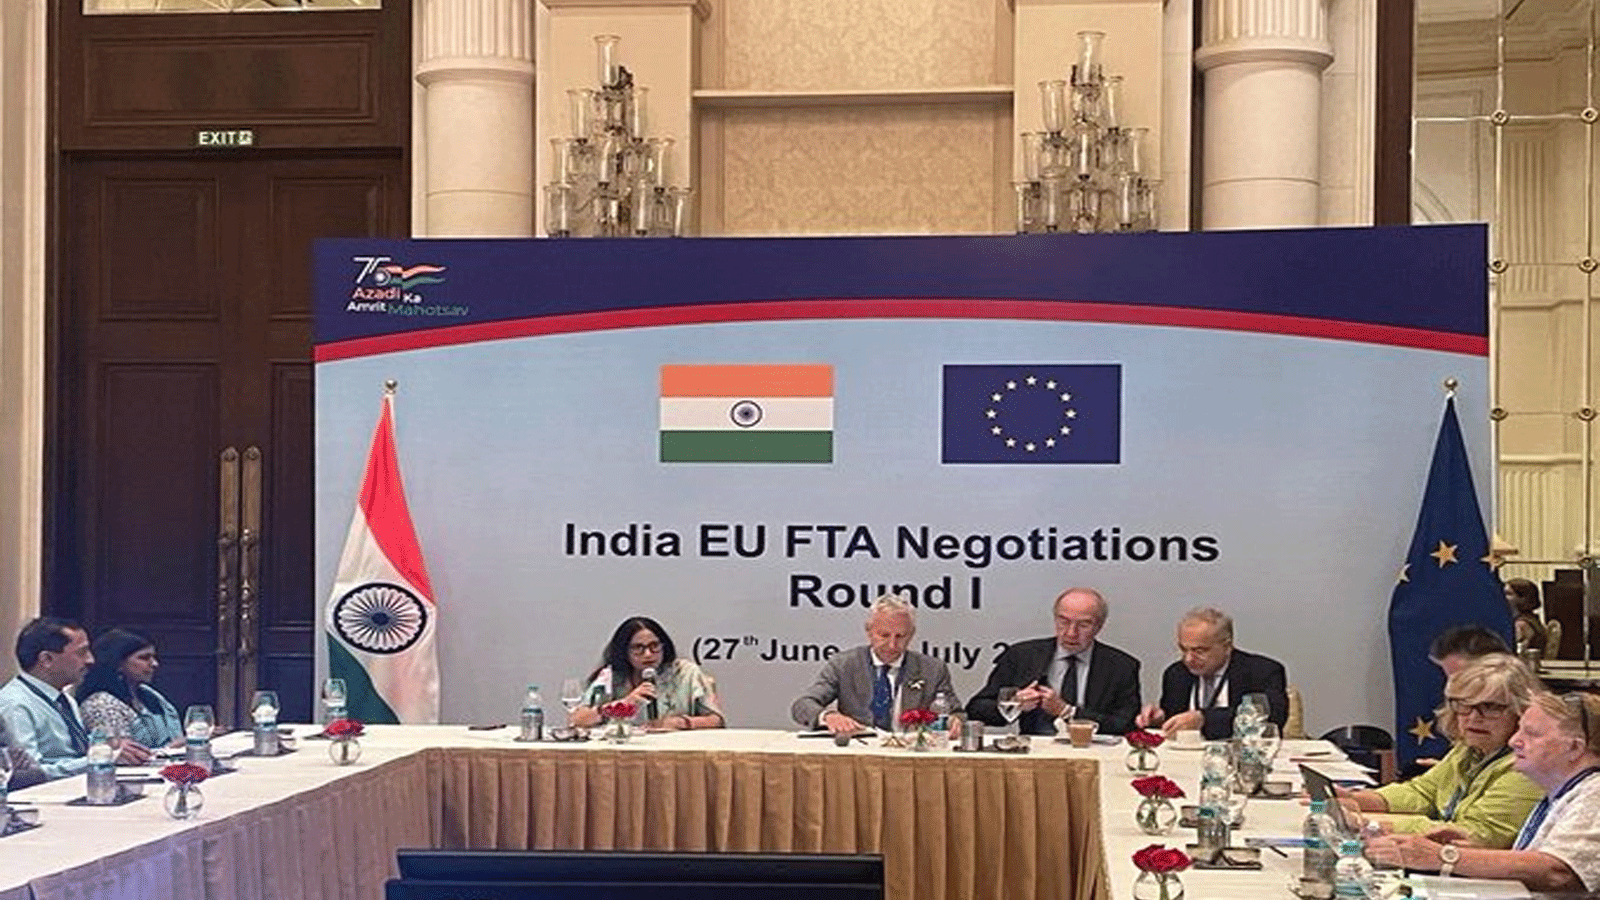 لقطة من الجولة الأولى للمفاوضات التجارية بين الهند والاتحاد الأوروبي في نيودلهي